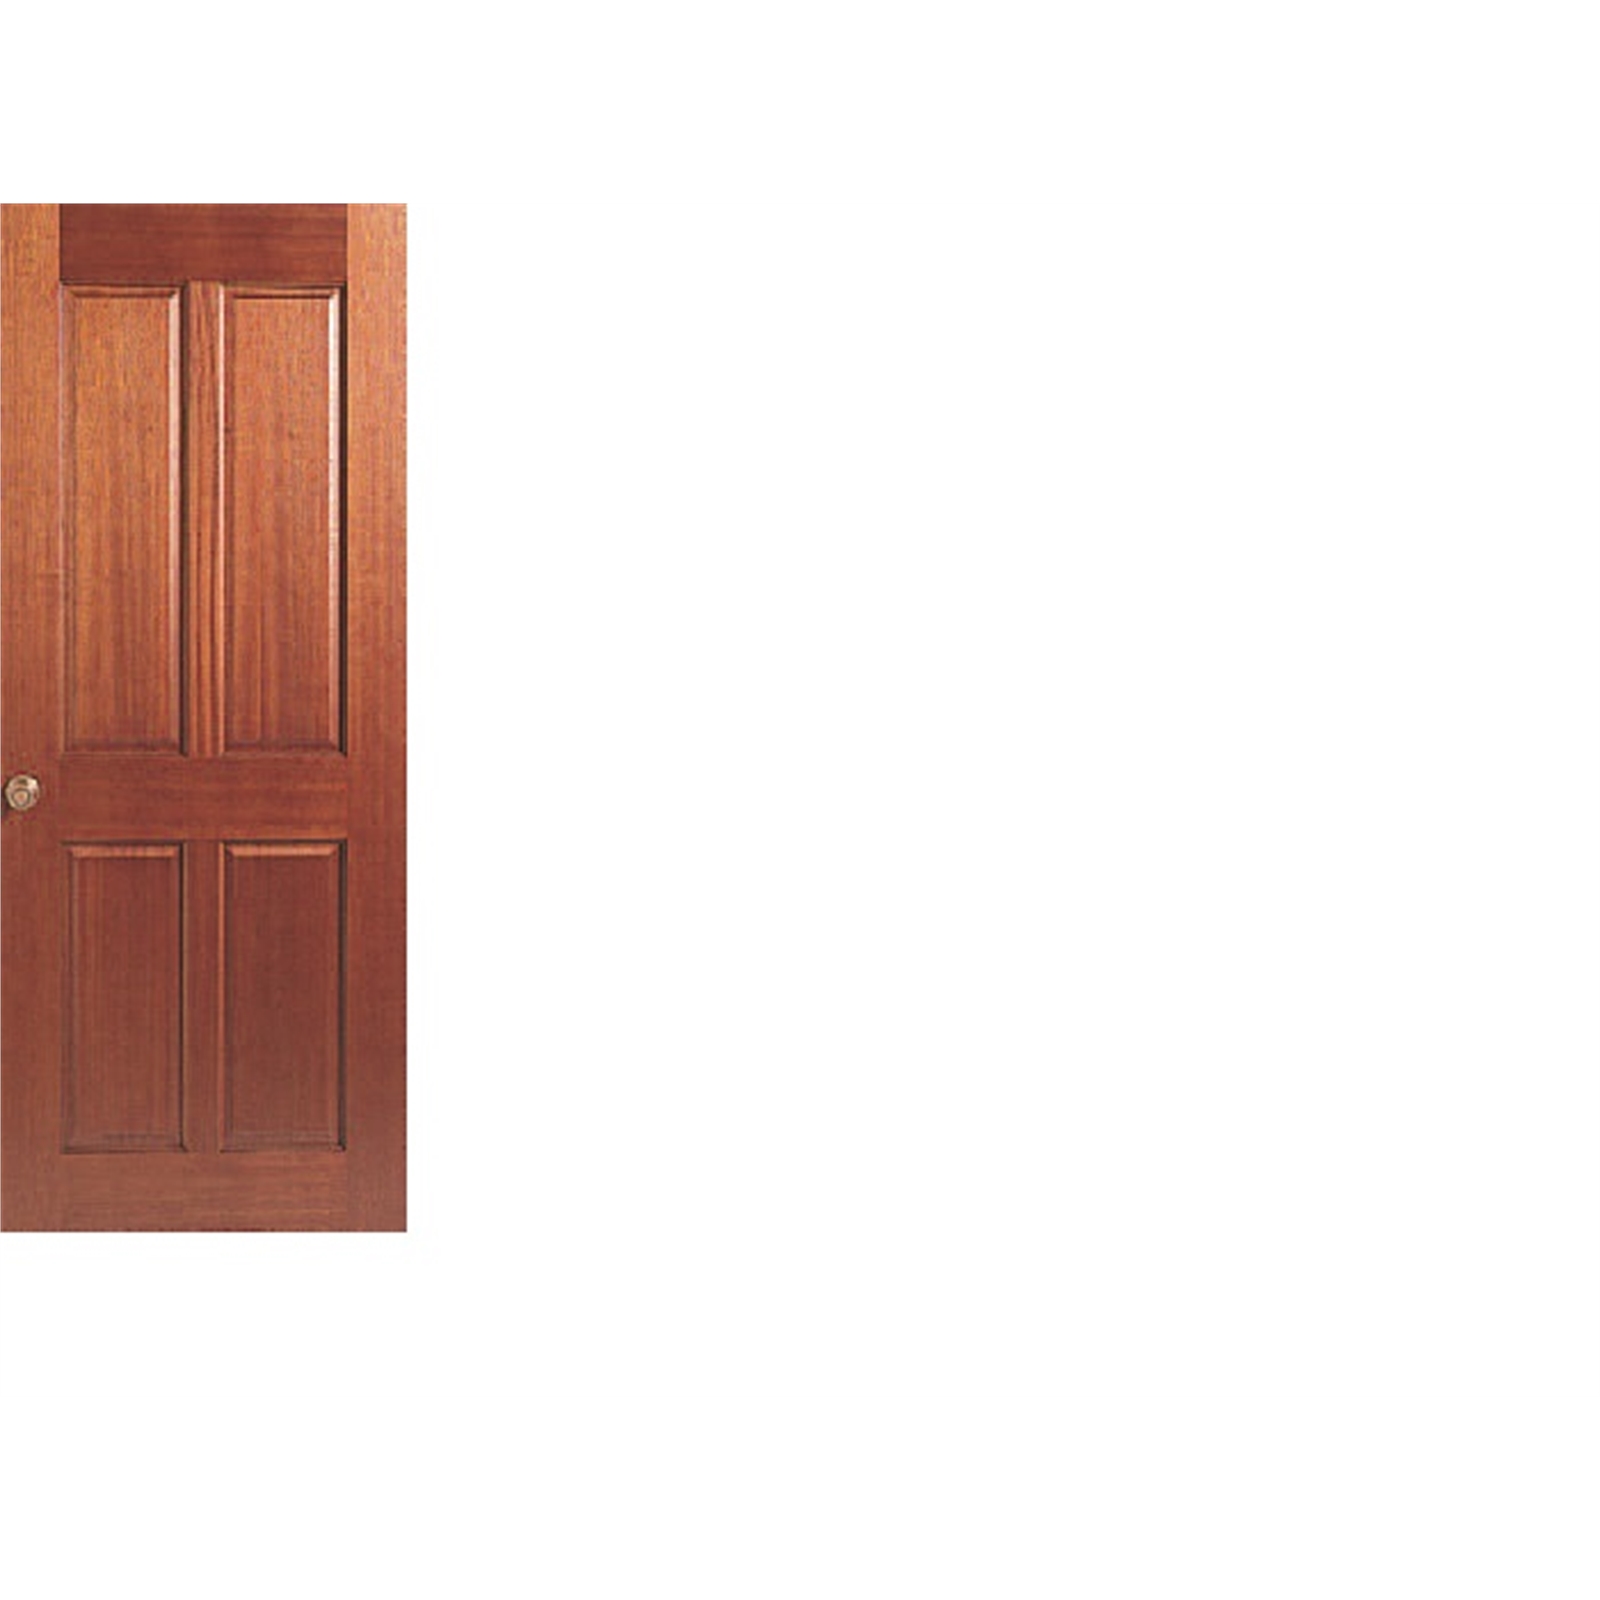 Hume Doors & Timber 2040 x 820 x 35mm Lincoln 2 Internal Door